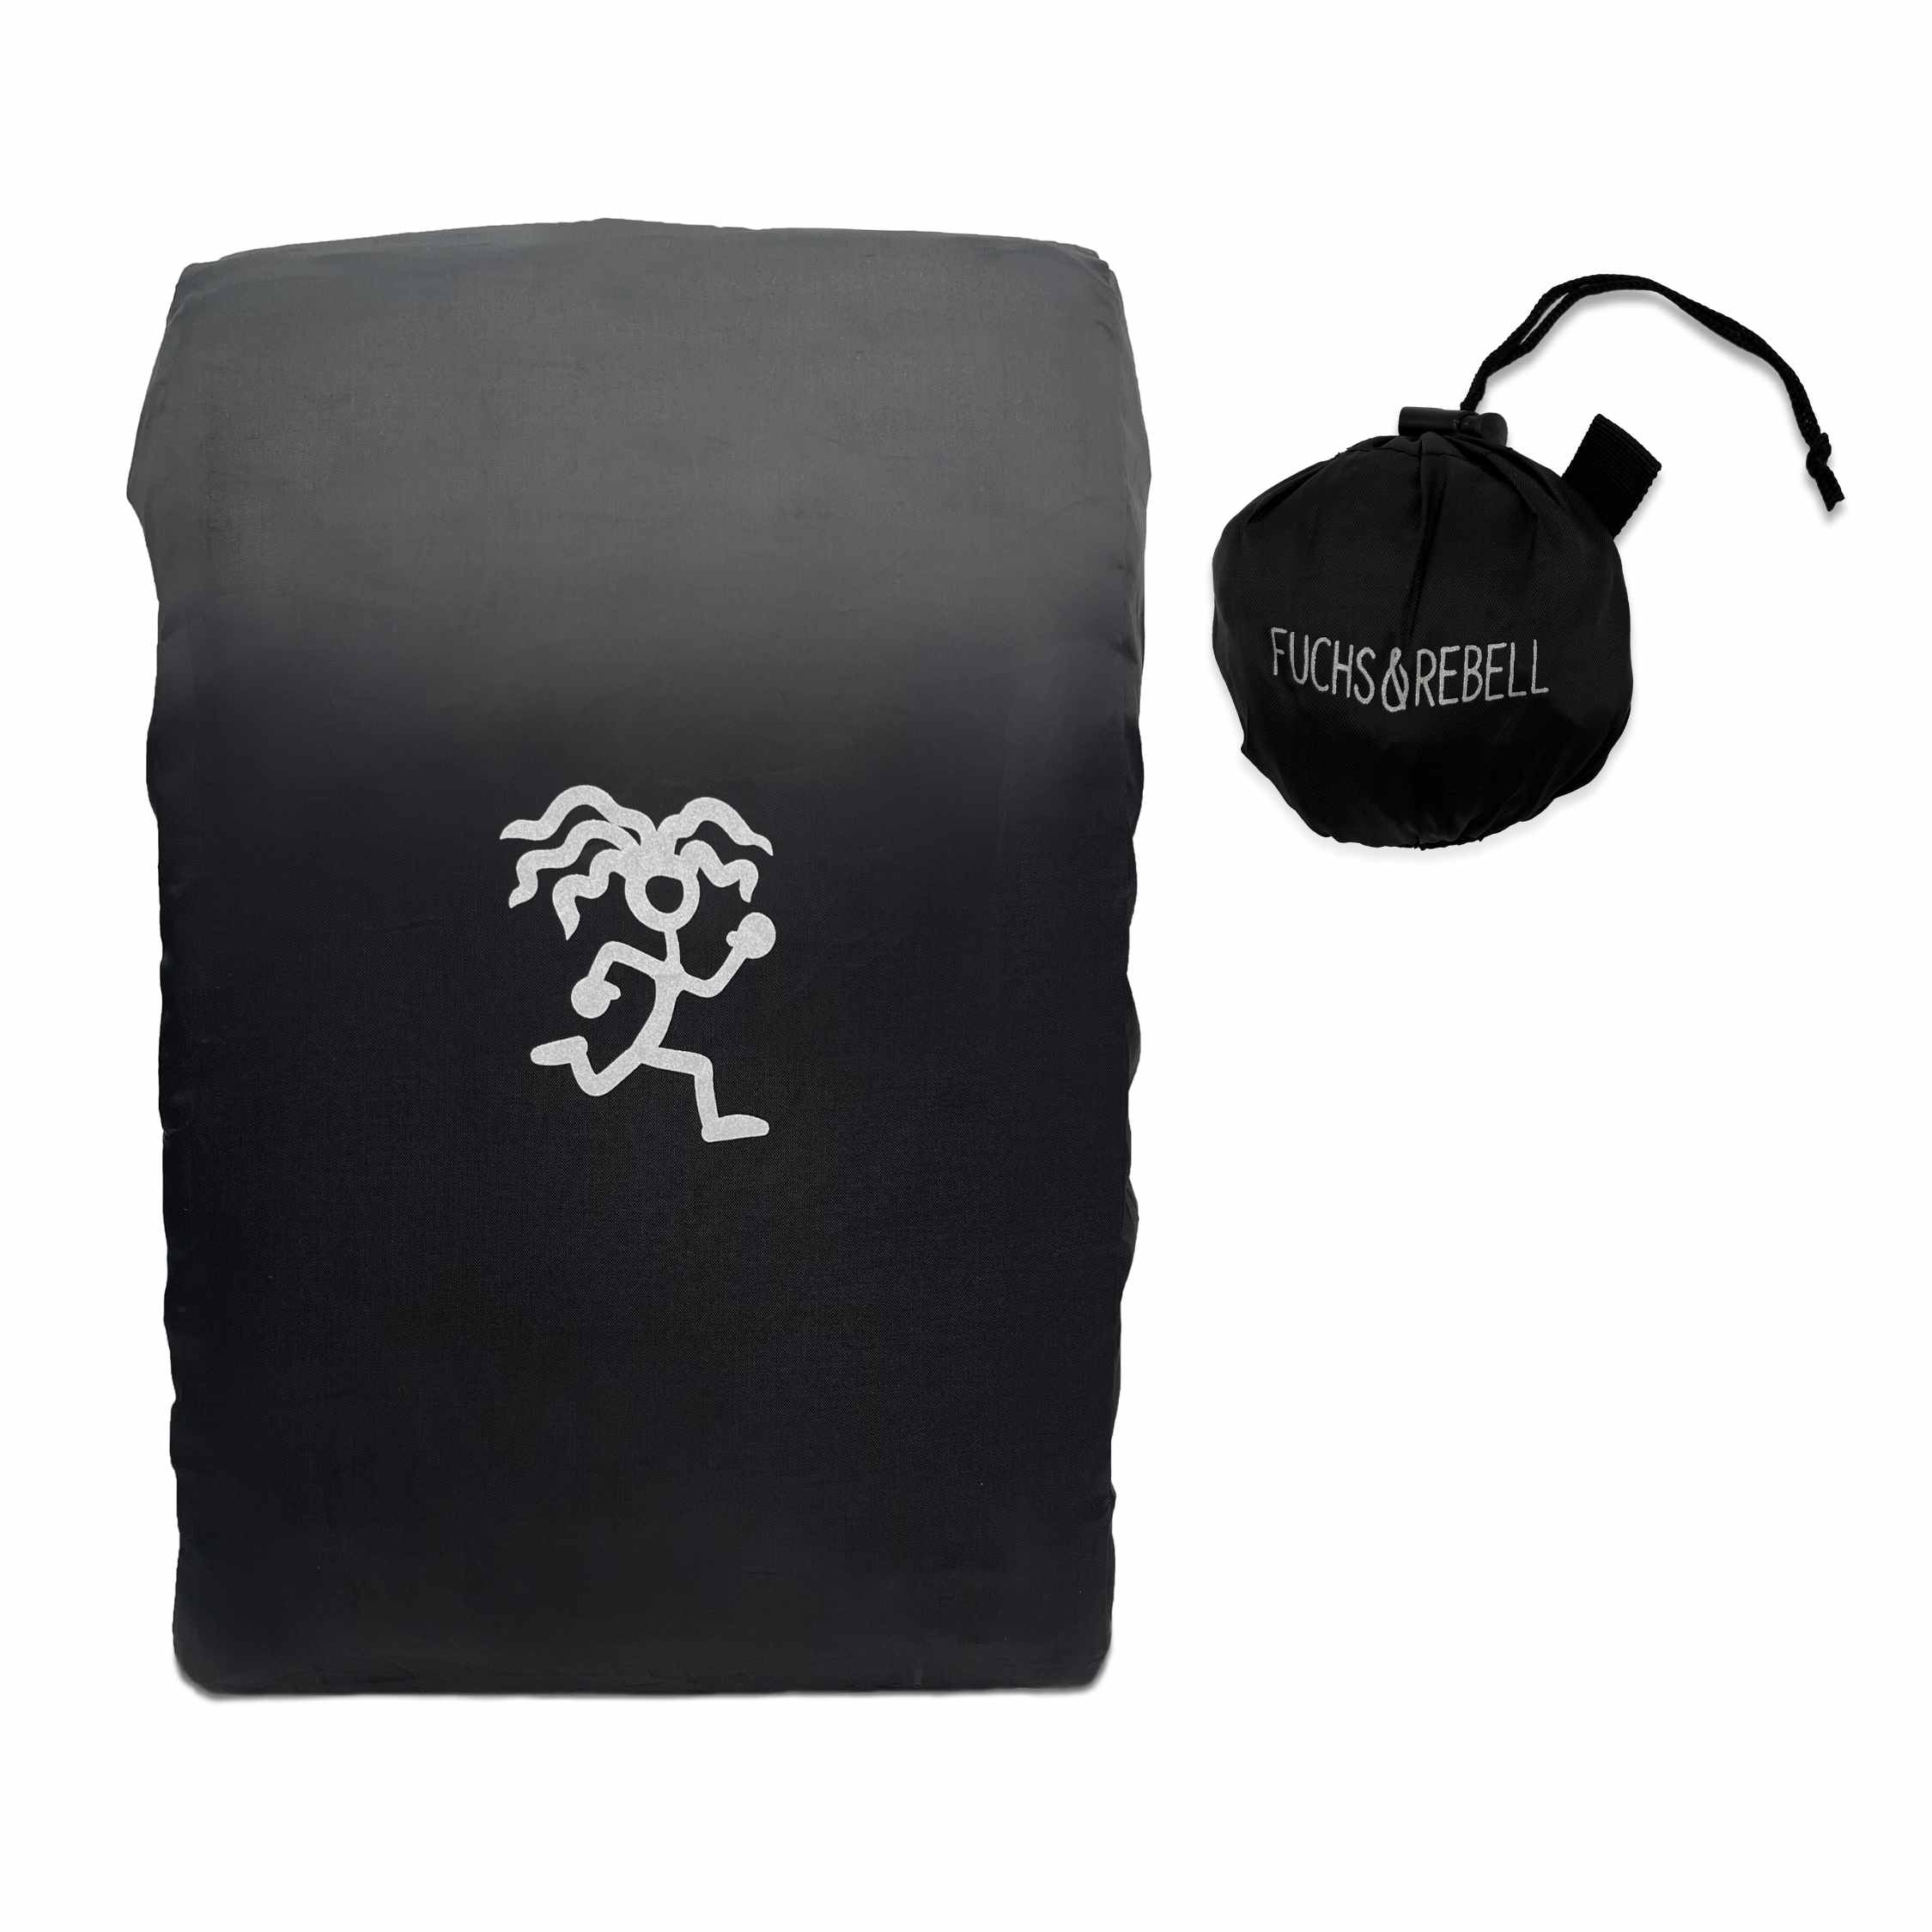 Frontansicht der schwarzen Regenschutzhuelle mit reflektierendem Logo und integrierter Tasche für mehr Sicherheit im Dunkeln und Schutz vor Regen und Schnee